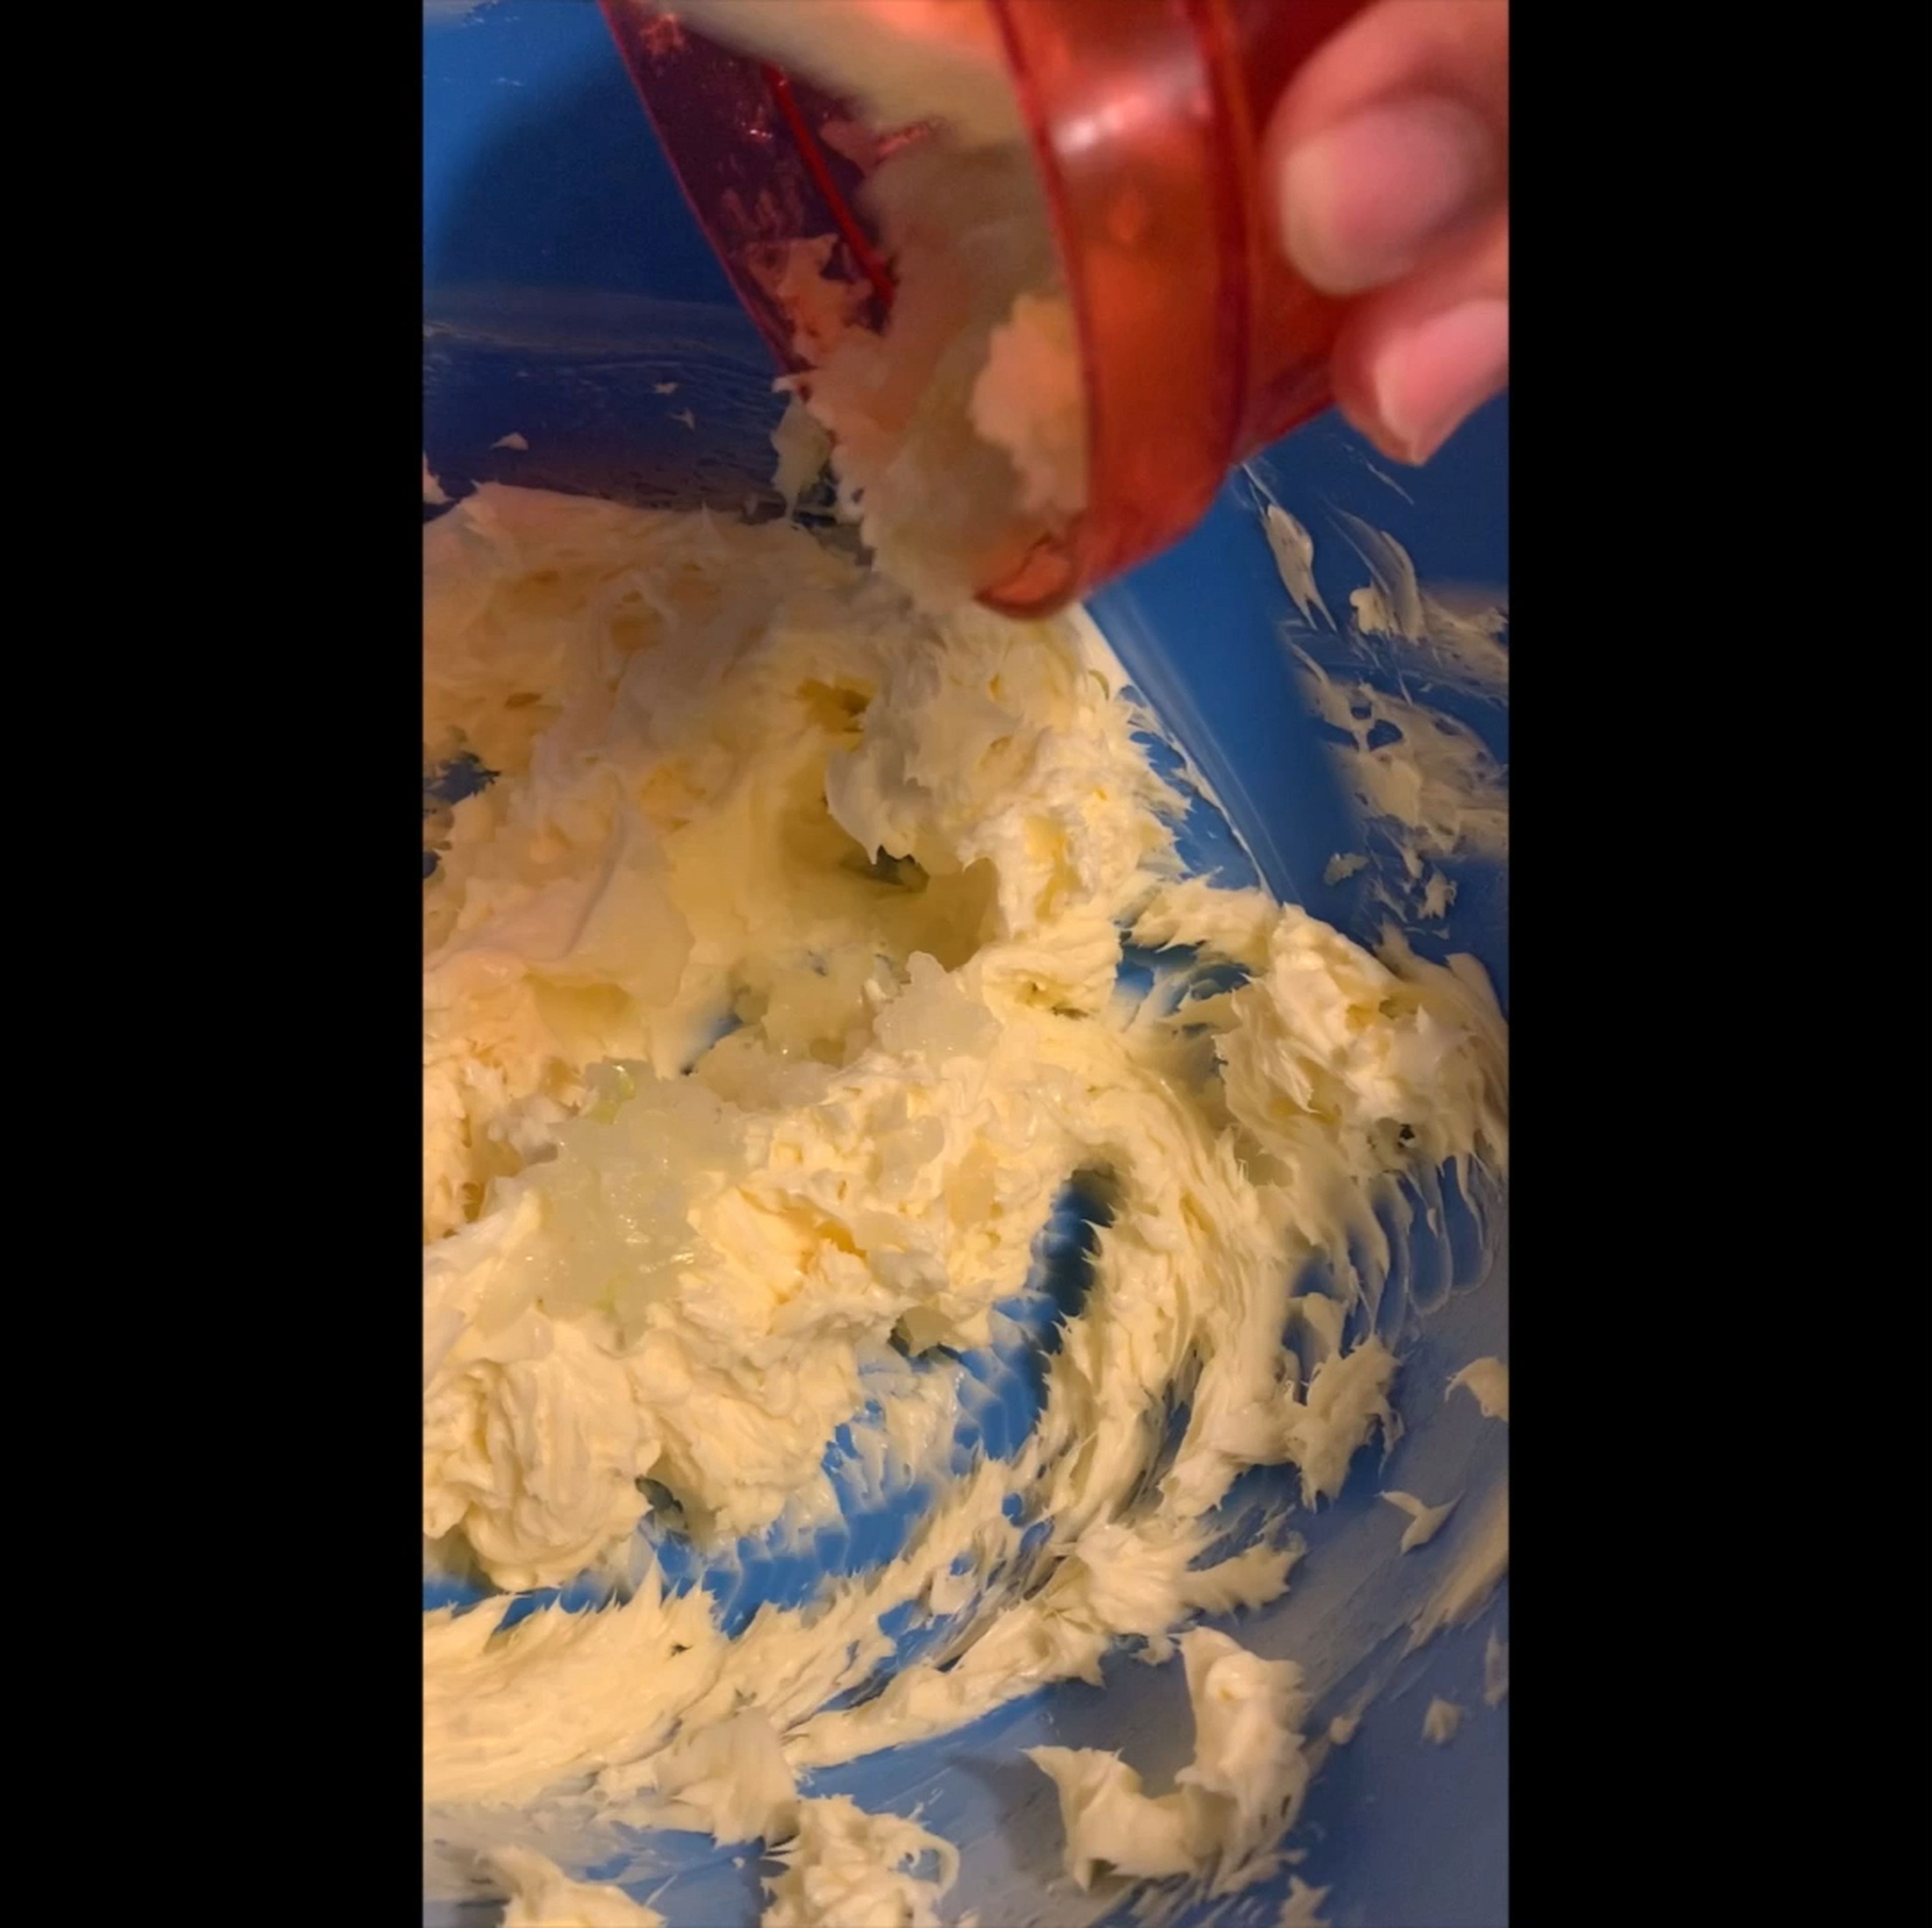 Zwiebel in kleine Würfel schneiden und der Schüssel zugeben.